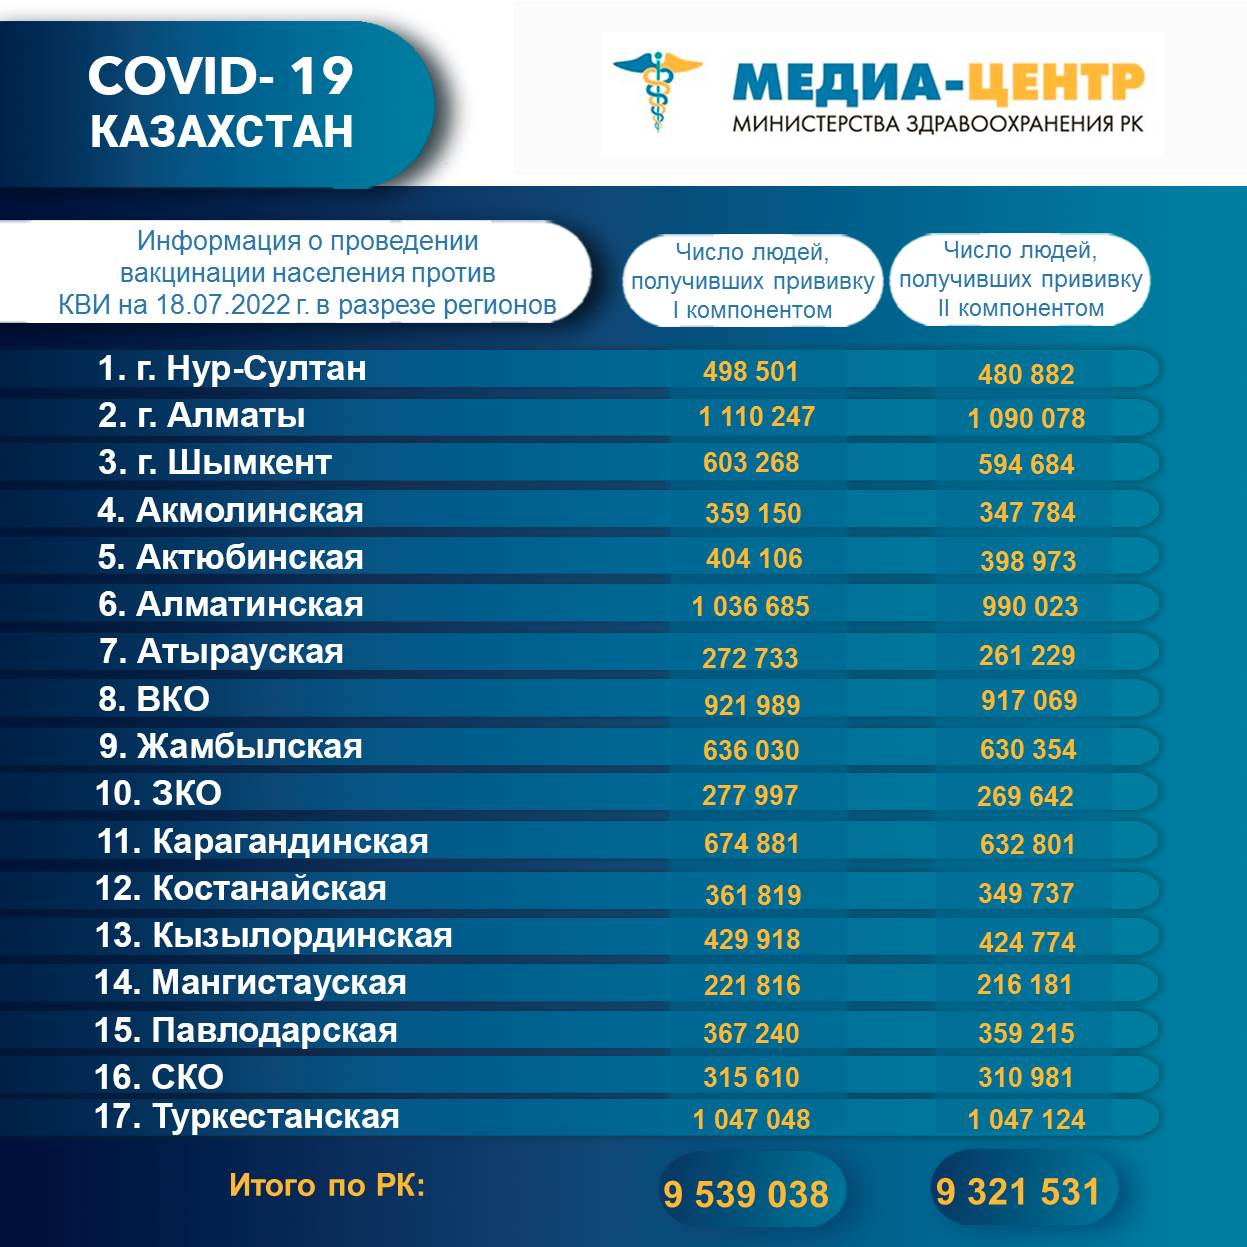 I компонентом 9 539 038 человек провакцинировано в Казахстане на 18.07.2022 г, II компонентом 9 321 531 человек. Ревакцинировано – 4 917 255